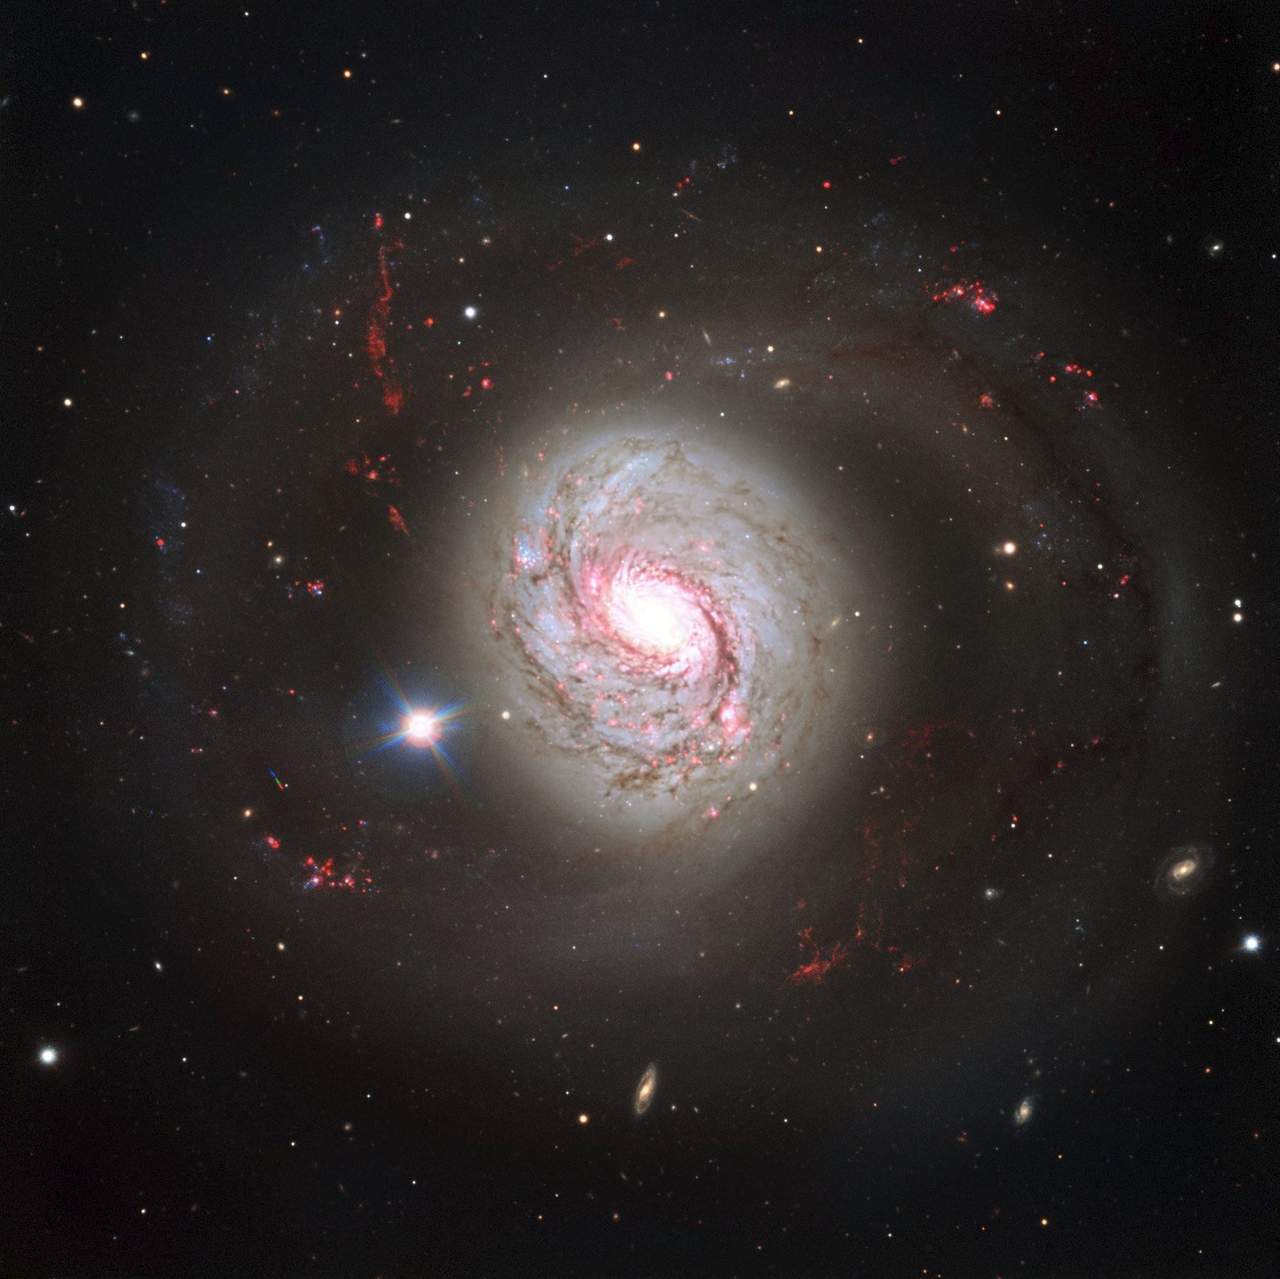 Telescopio espacial Hubble muestra galaxia con núcleo activo